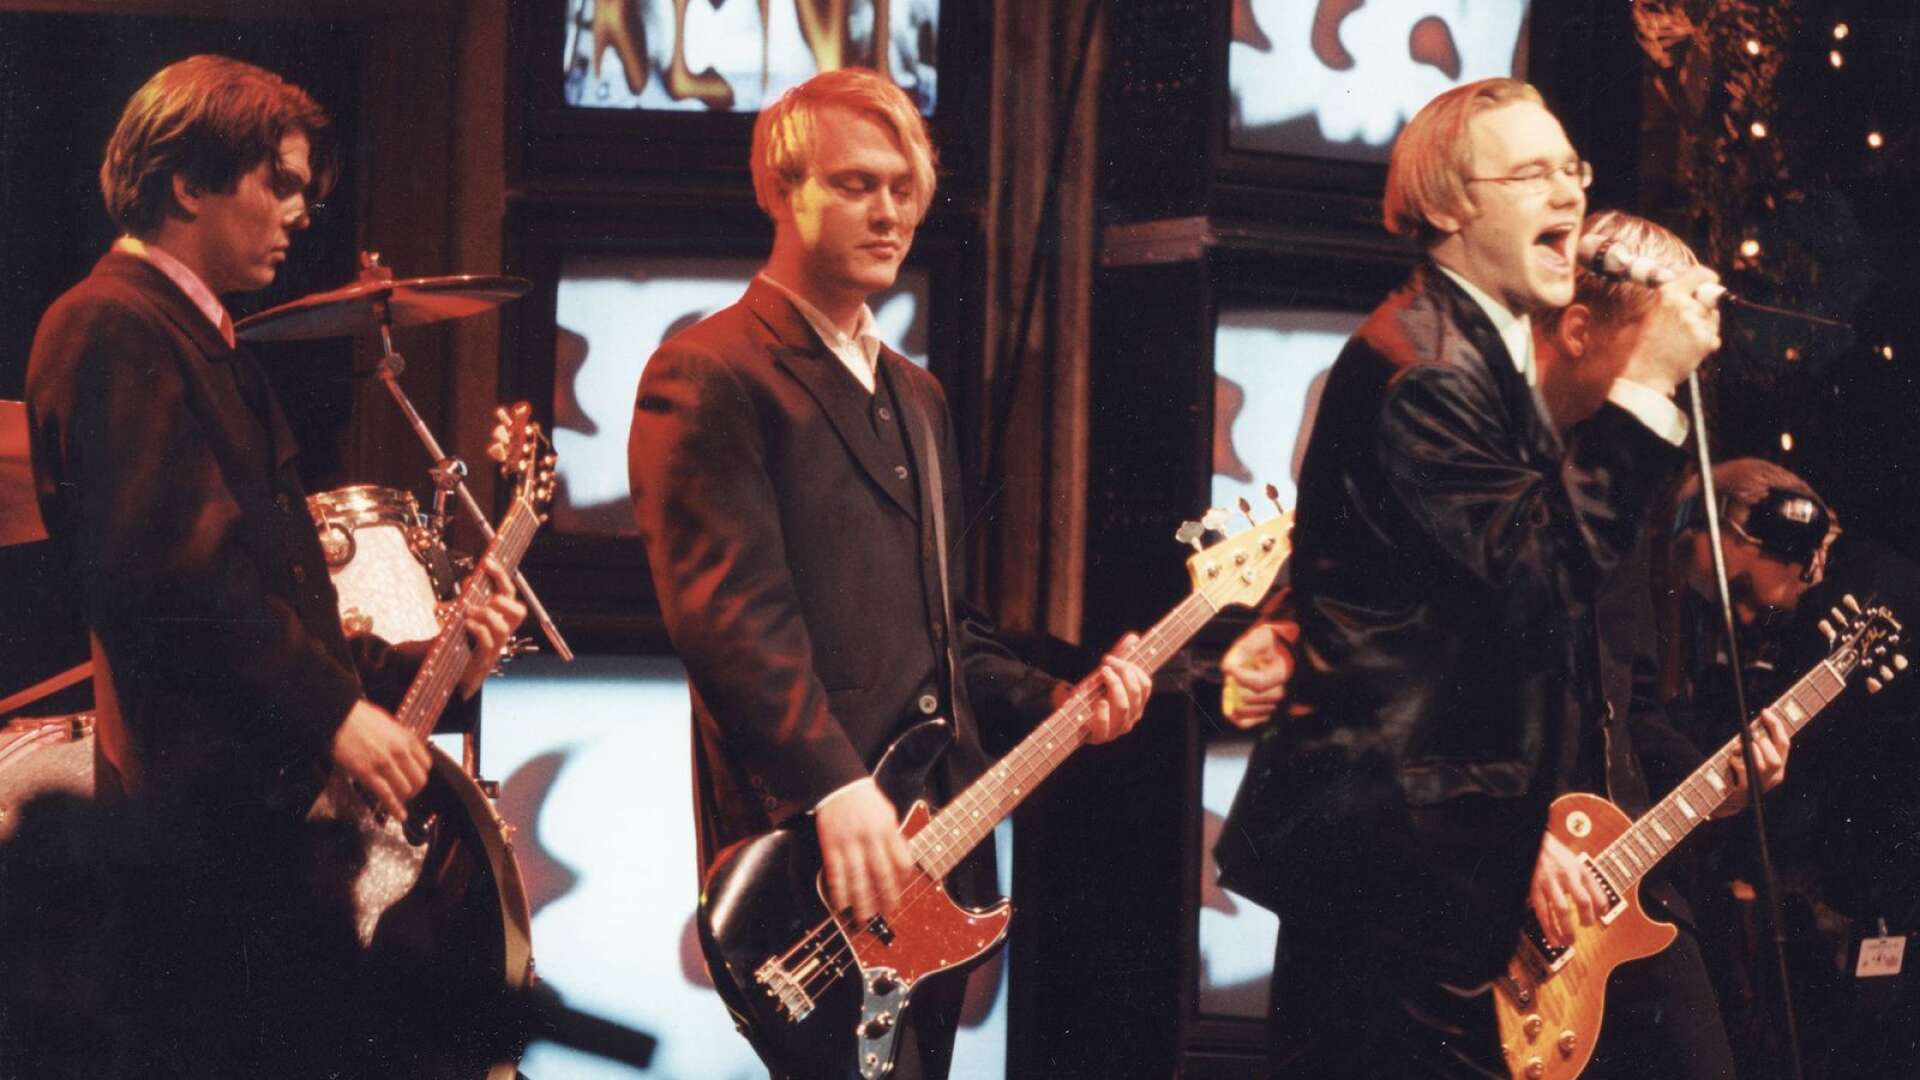 Martin Roos, Martin Sköld och Joakim Berg i Kent på Grammisgalan 1996 där de vann pris för debutalbumet som spelades in i Värmland.